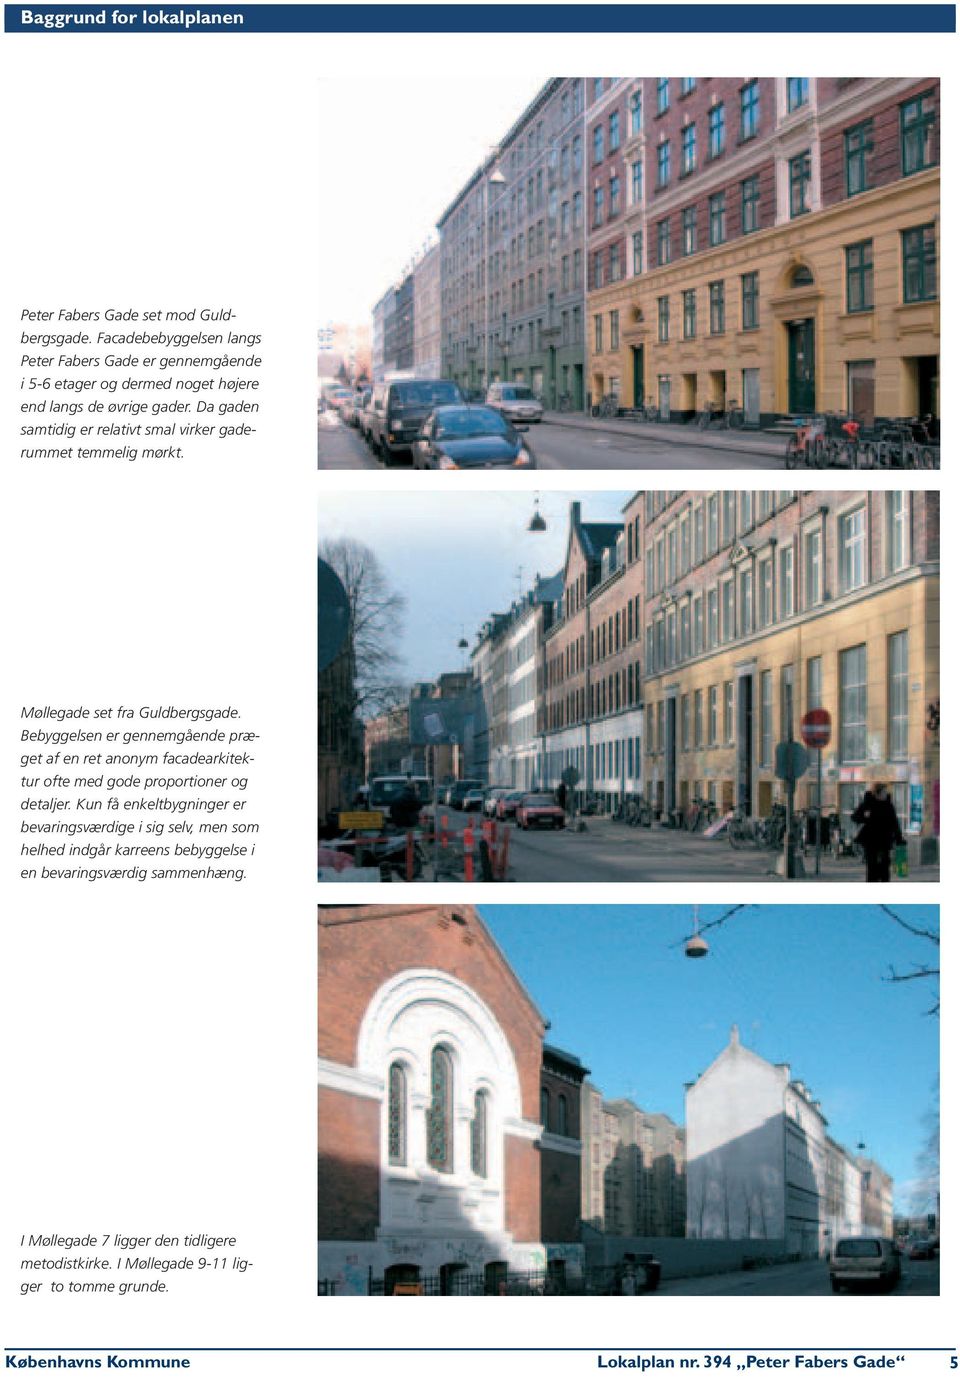 Da gaden samtidig er relativt smal virker gaderummet temmelig mørkt. Møllegade set fra Guldbergsgade.